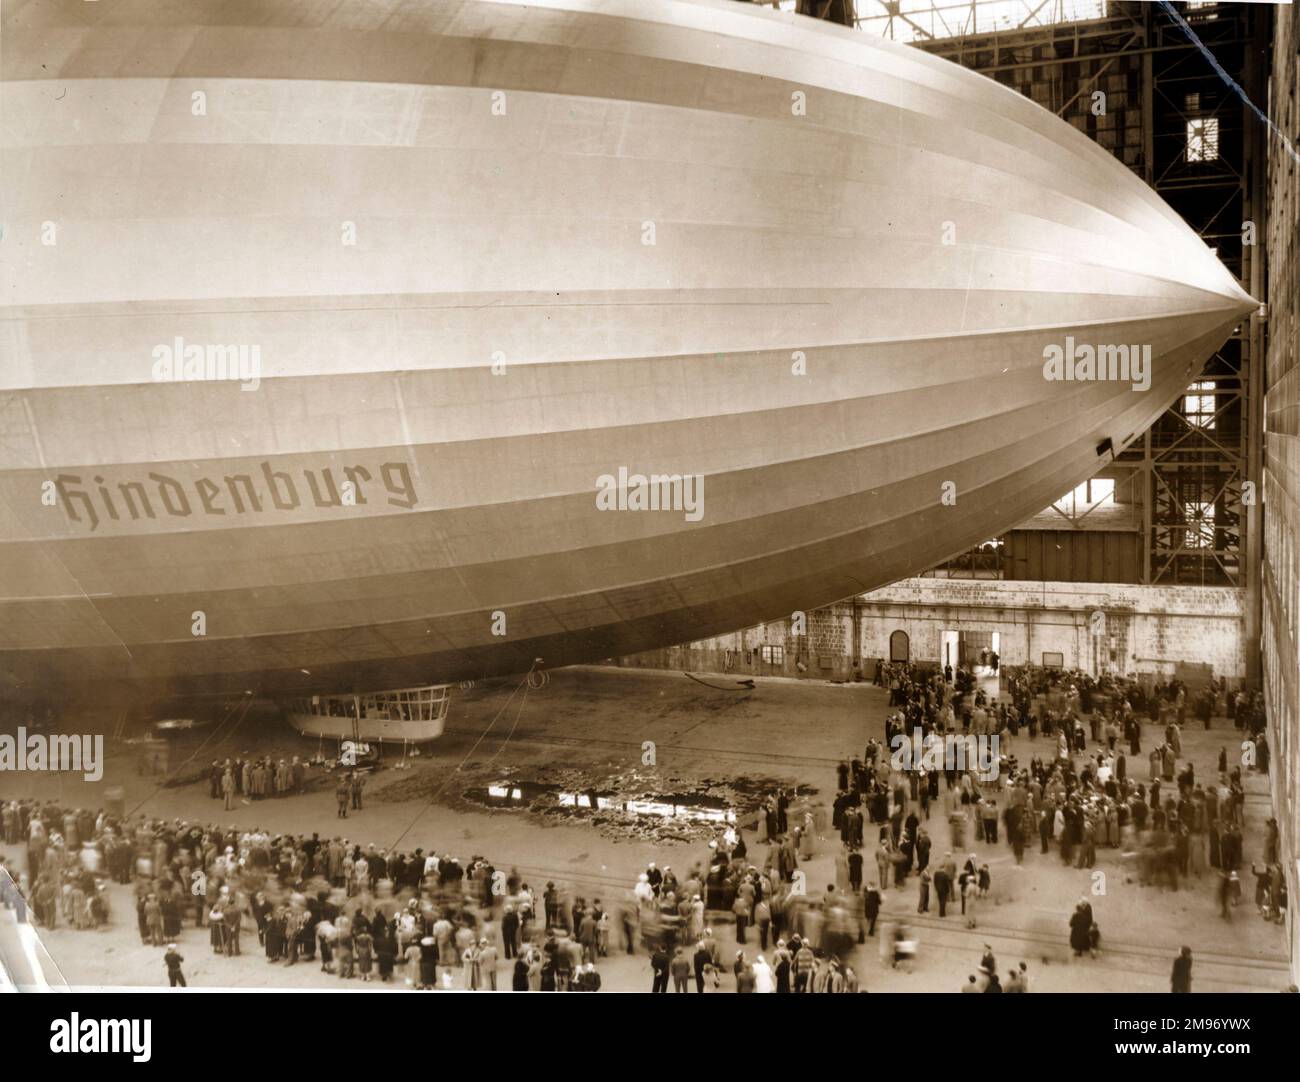 Luftschiffbau Zeppelin LZ 129 Hindenburg dopo il suo arrivo a Lakehurst, New Jersey, 10 maggio 1936, dopo il suo primo volo per il Nord America da Friedrichshafen. L’Hindenburg era destinato a trasportare 50 passeggeri di lusso in un servizio di linea regolare attraverso l’Atlantico settentrionale, tuttavia la sua distruzione per incendio durante l’atterraggio a Lakehurst nelle prime ore del 7 maggio 1937 ha effettivamente posto fine all’età d’oro dei grandi aerei passeggeri visti durante gli anni ’1930s. Foto Stock